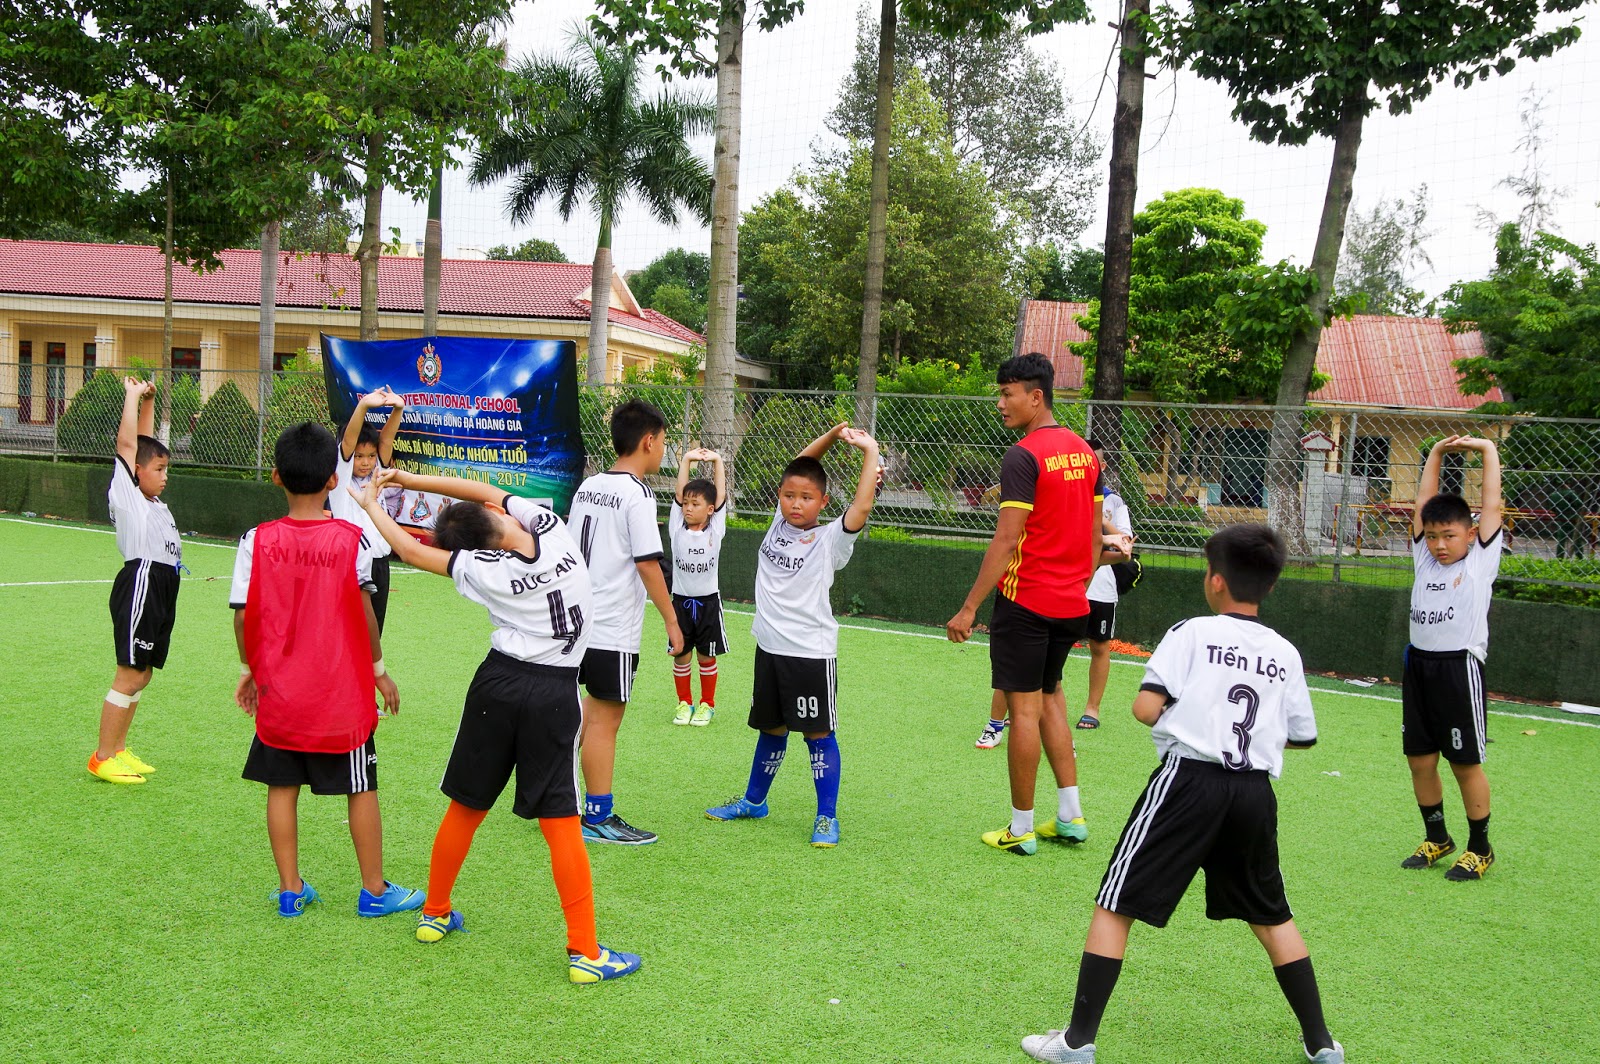 Lớp học bóng đá tại Dĩ An Bình Dương ~ TRUNG TÂM ĐÀO TẠO BÓNG ĐÁ THIẾU NHI HỒ CHÍ MINH